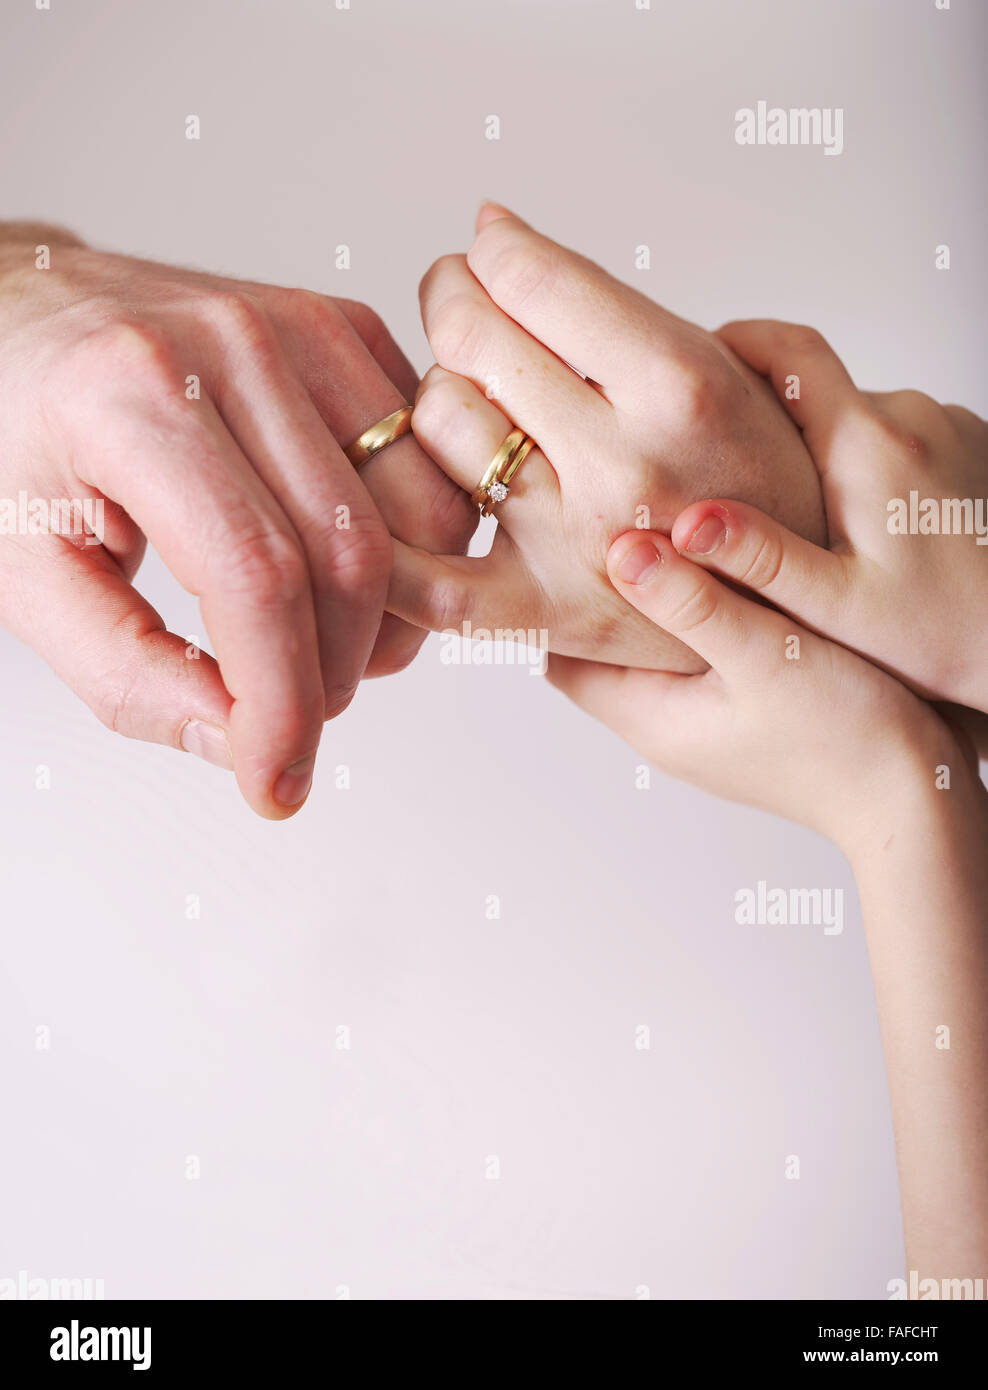 Matrimonio joven mantenga las manos con los anillos de bodas presente en las manos de los niños, el agarre a la madre sosteniendo la relación juntos Foto de stock